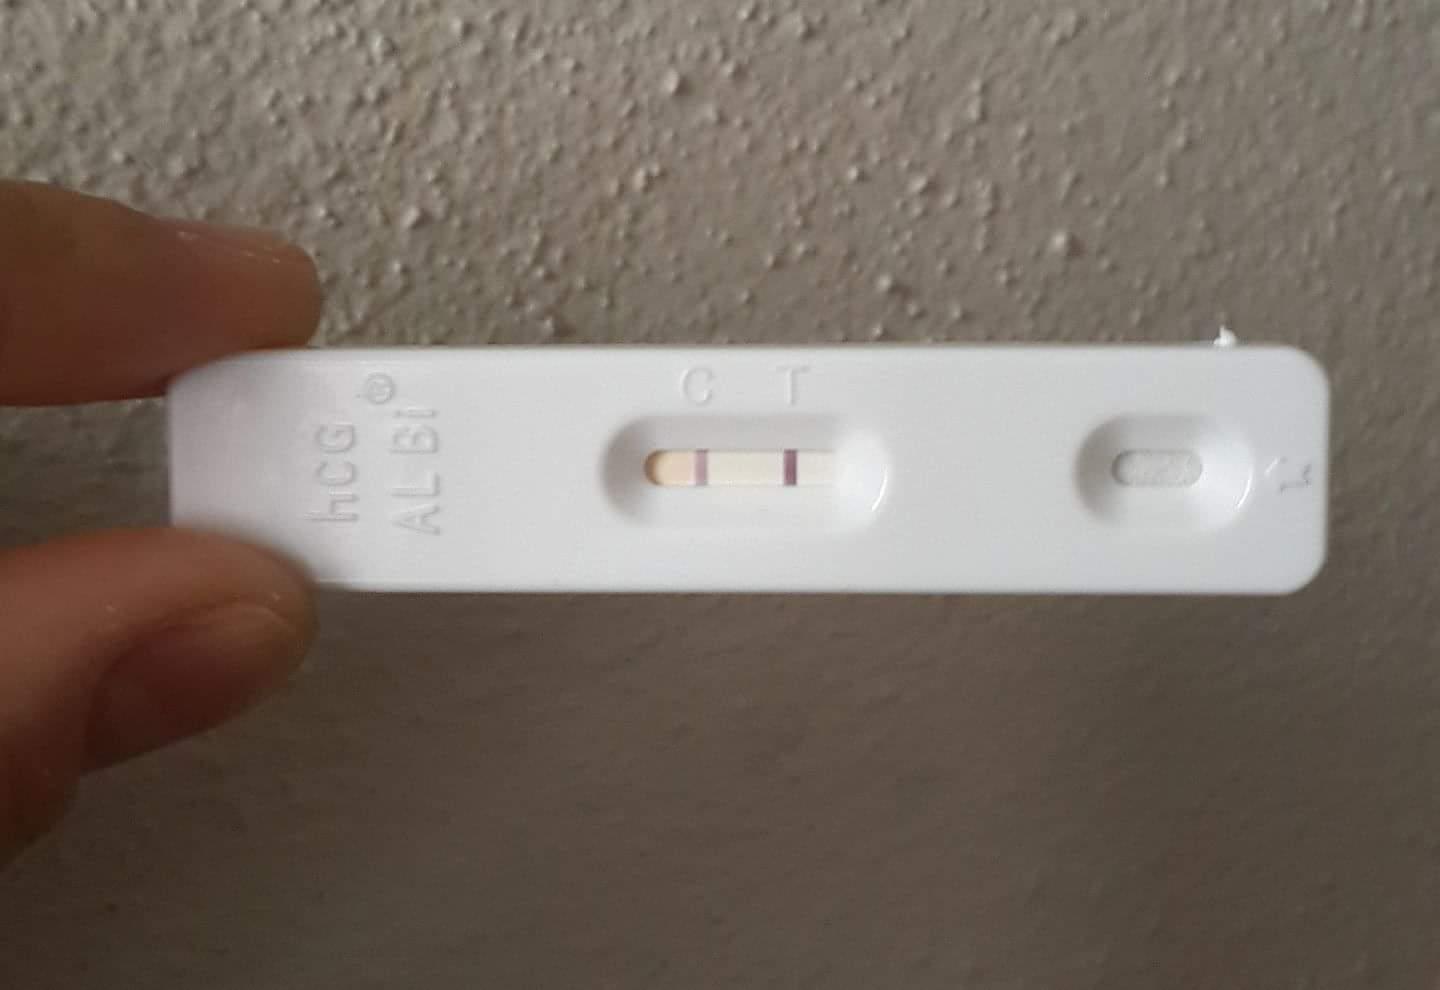 Evdeki Hamilelik Testi Negatif Ama Kan Testi Negatif Cikti Sorcev